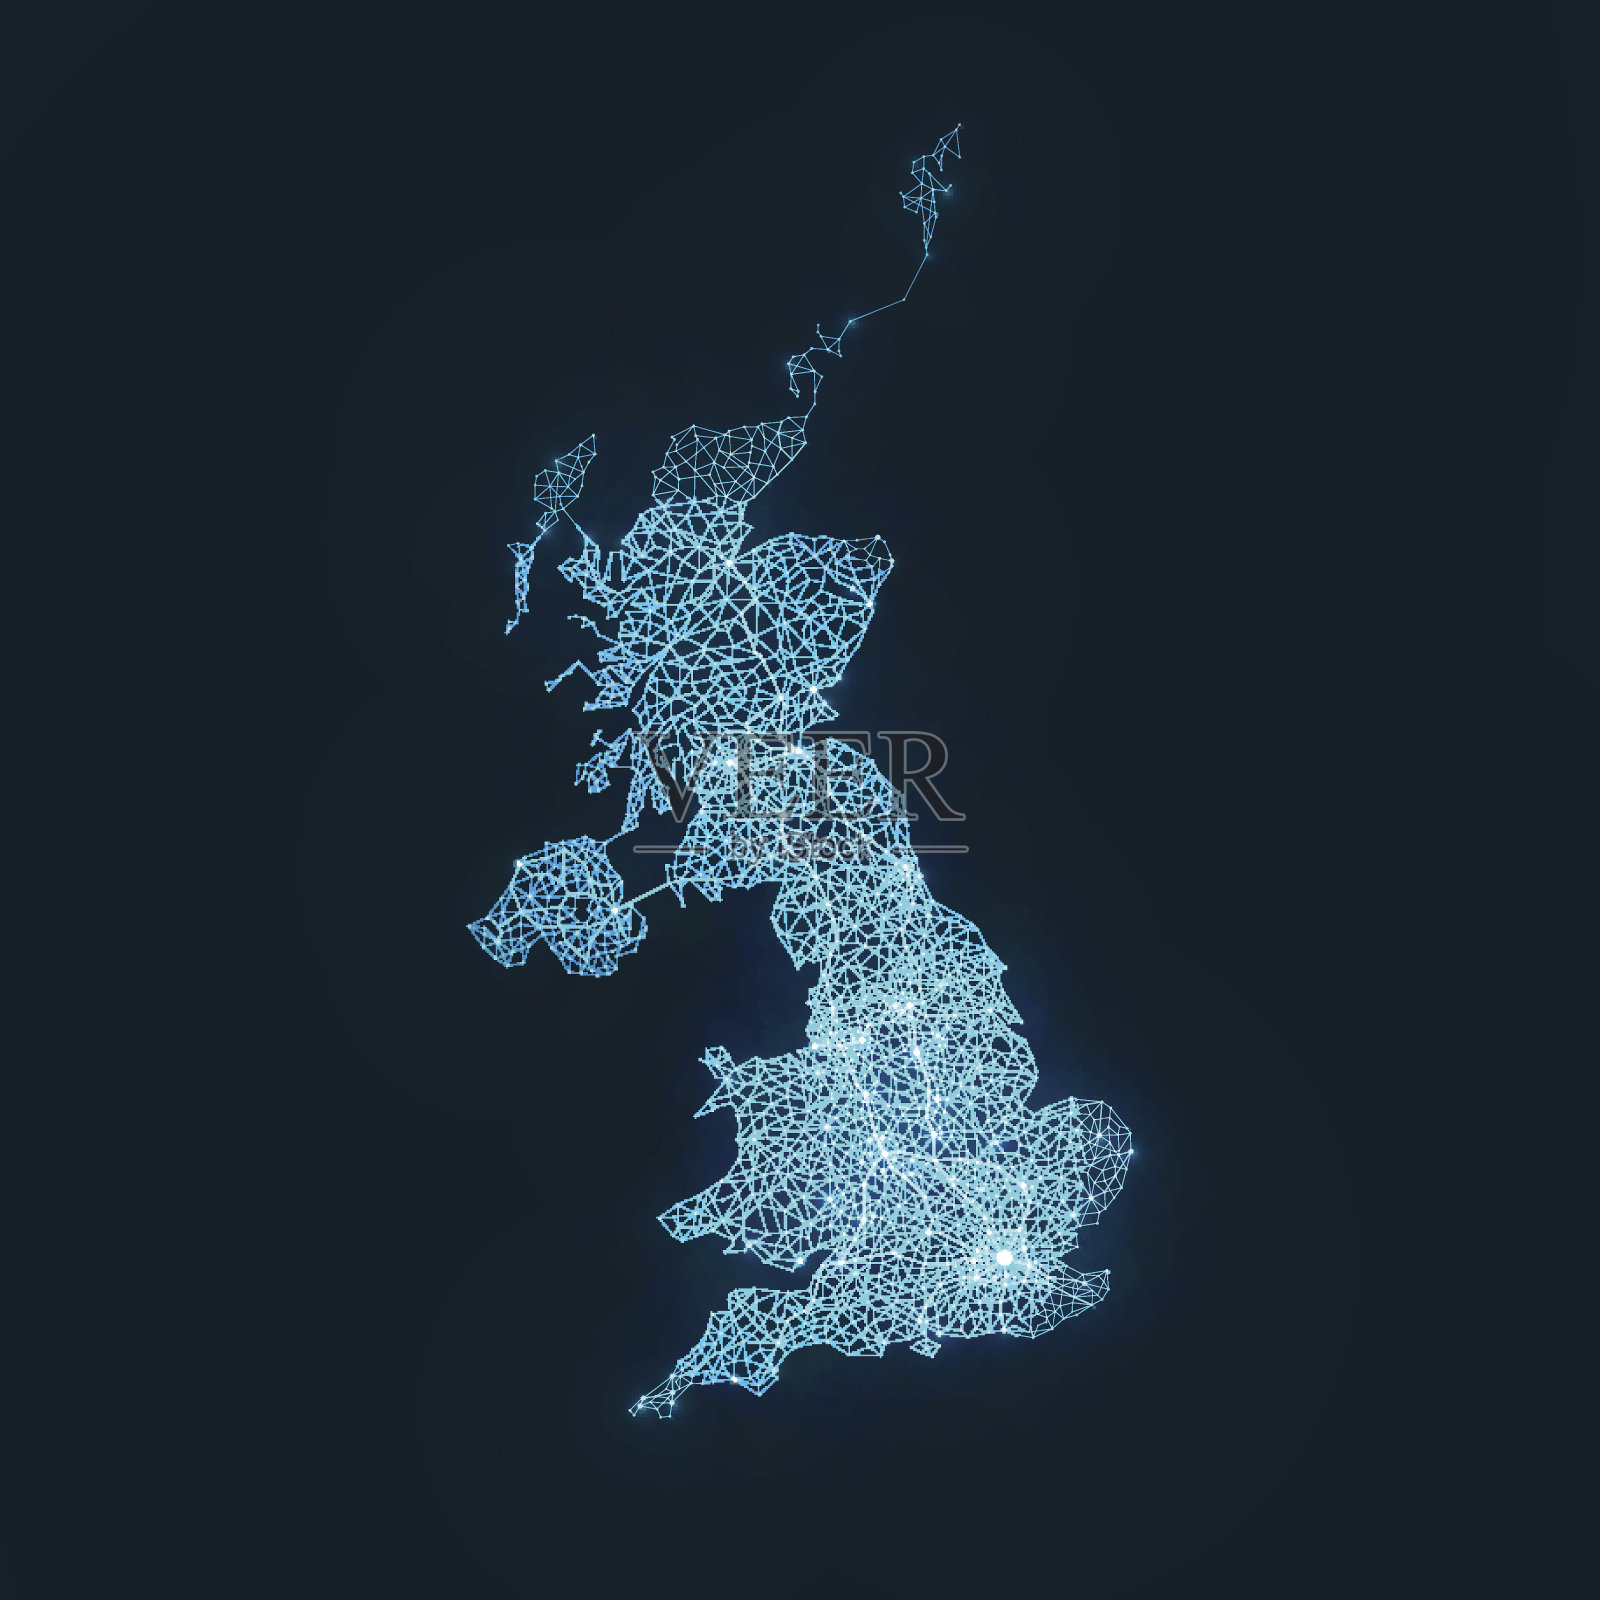 摘要:英国电信网络地图插画图片素材